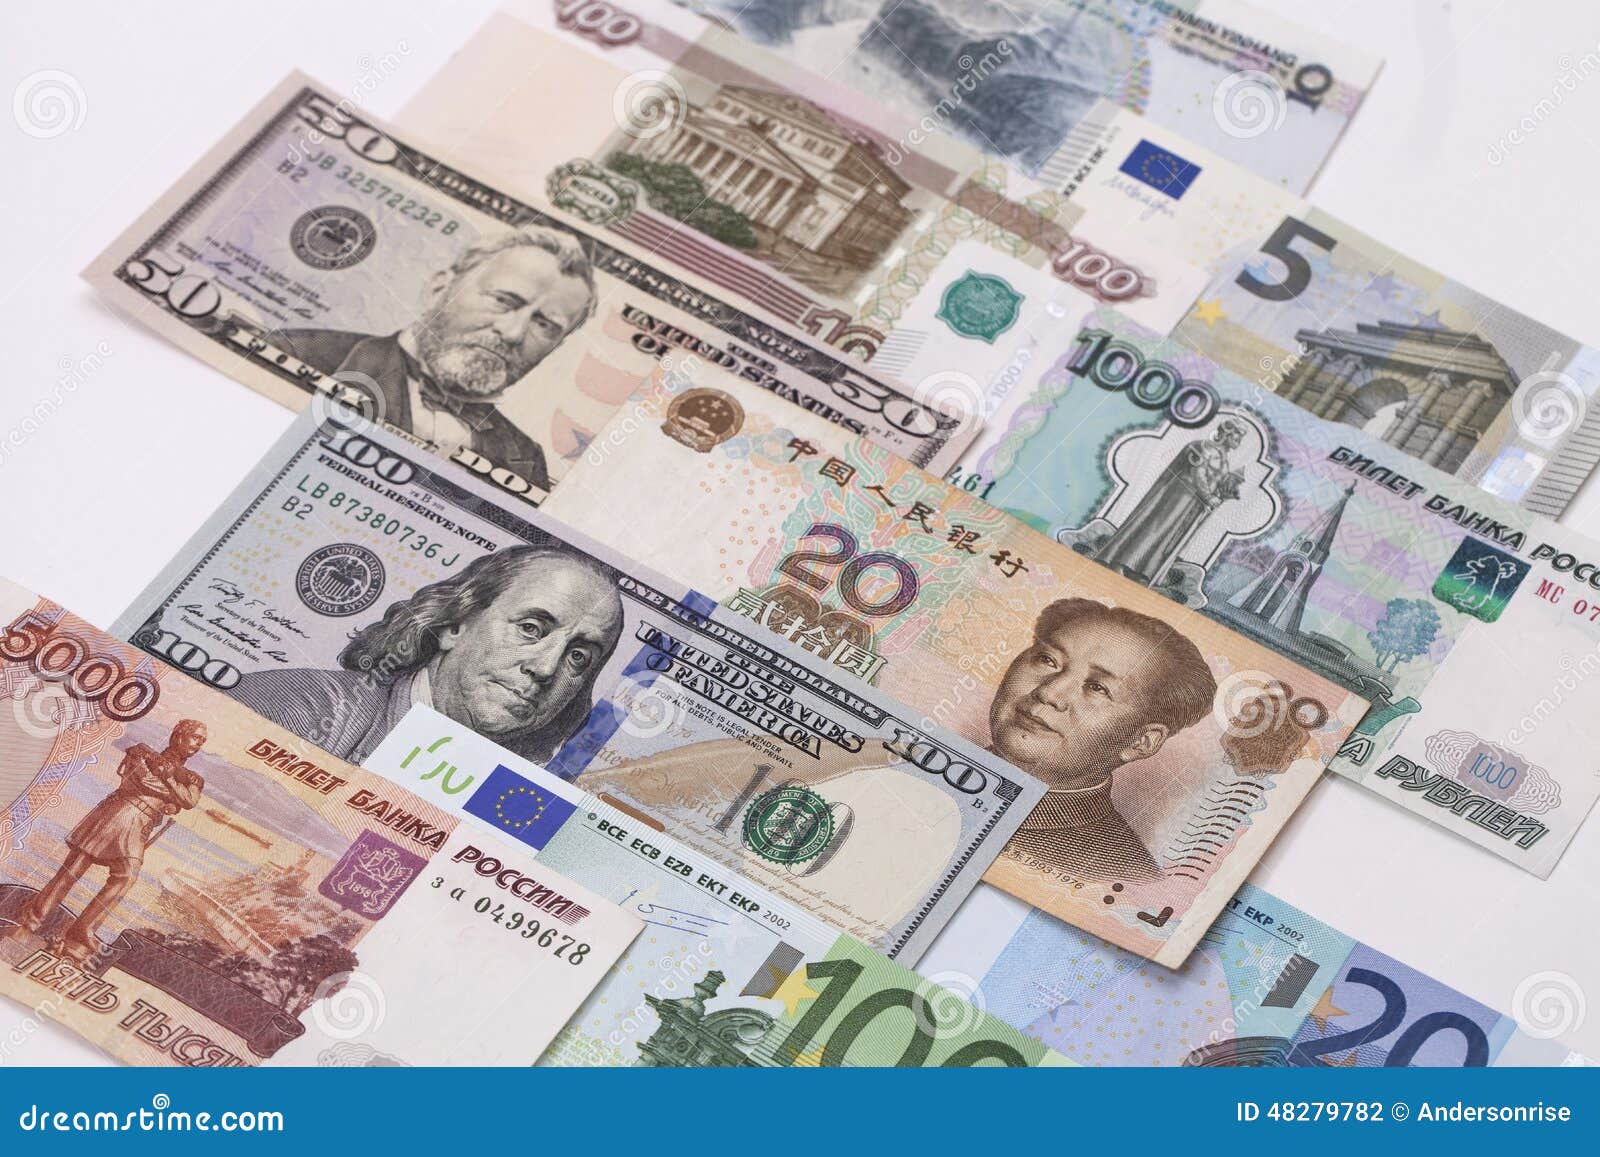 Соответствующая иностранная валюта. Иностранная валюта. Китайская валюта. Валюта картинки. Юань (валюта).